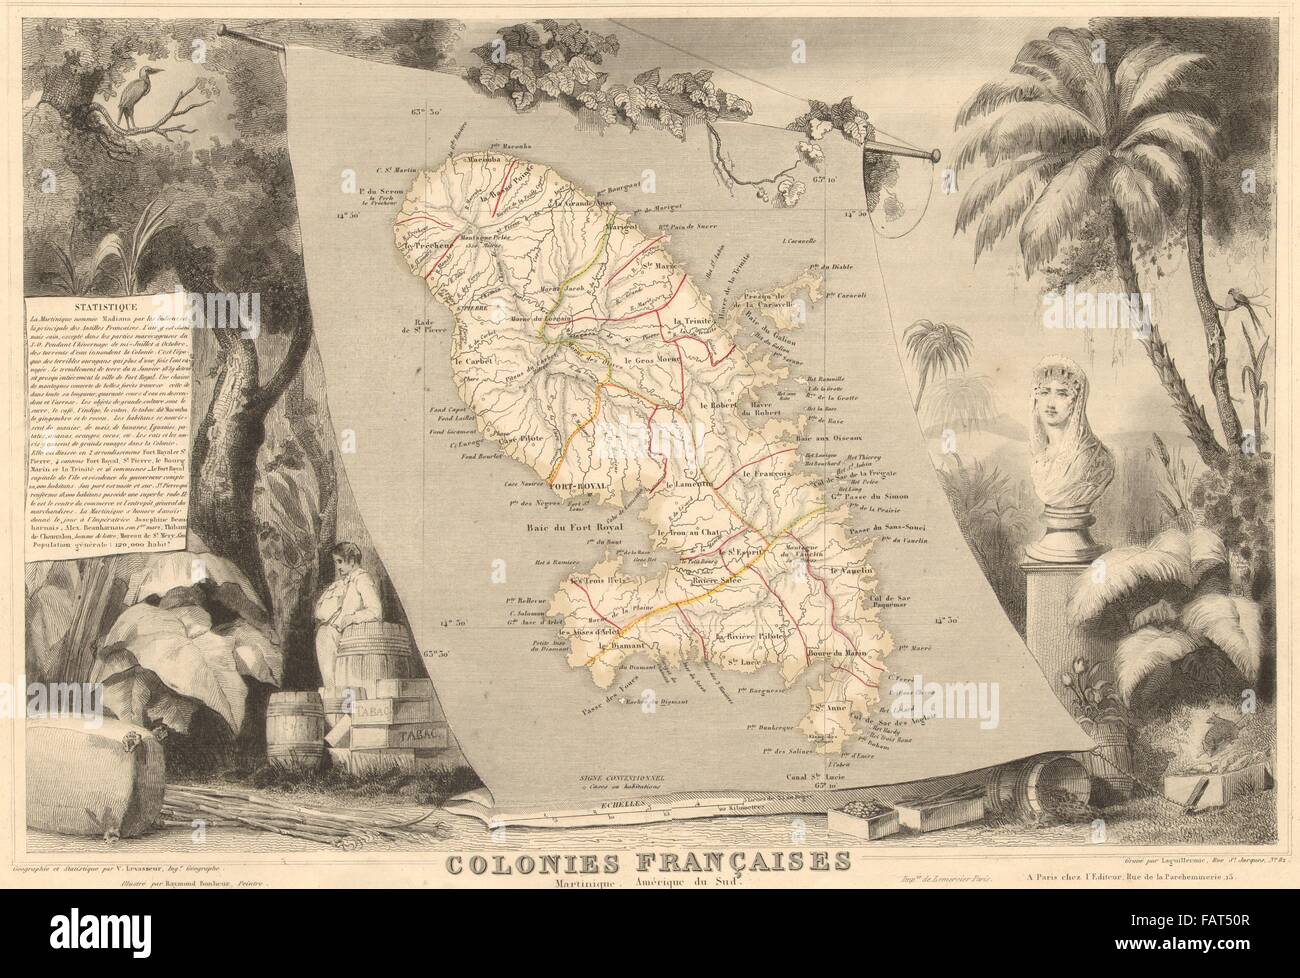 COLONIES FRANÇAISES MARTINIQUE AMÉRIQUE DU SUD. Antilles.Levasseur, 1852 map Banque D'Images